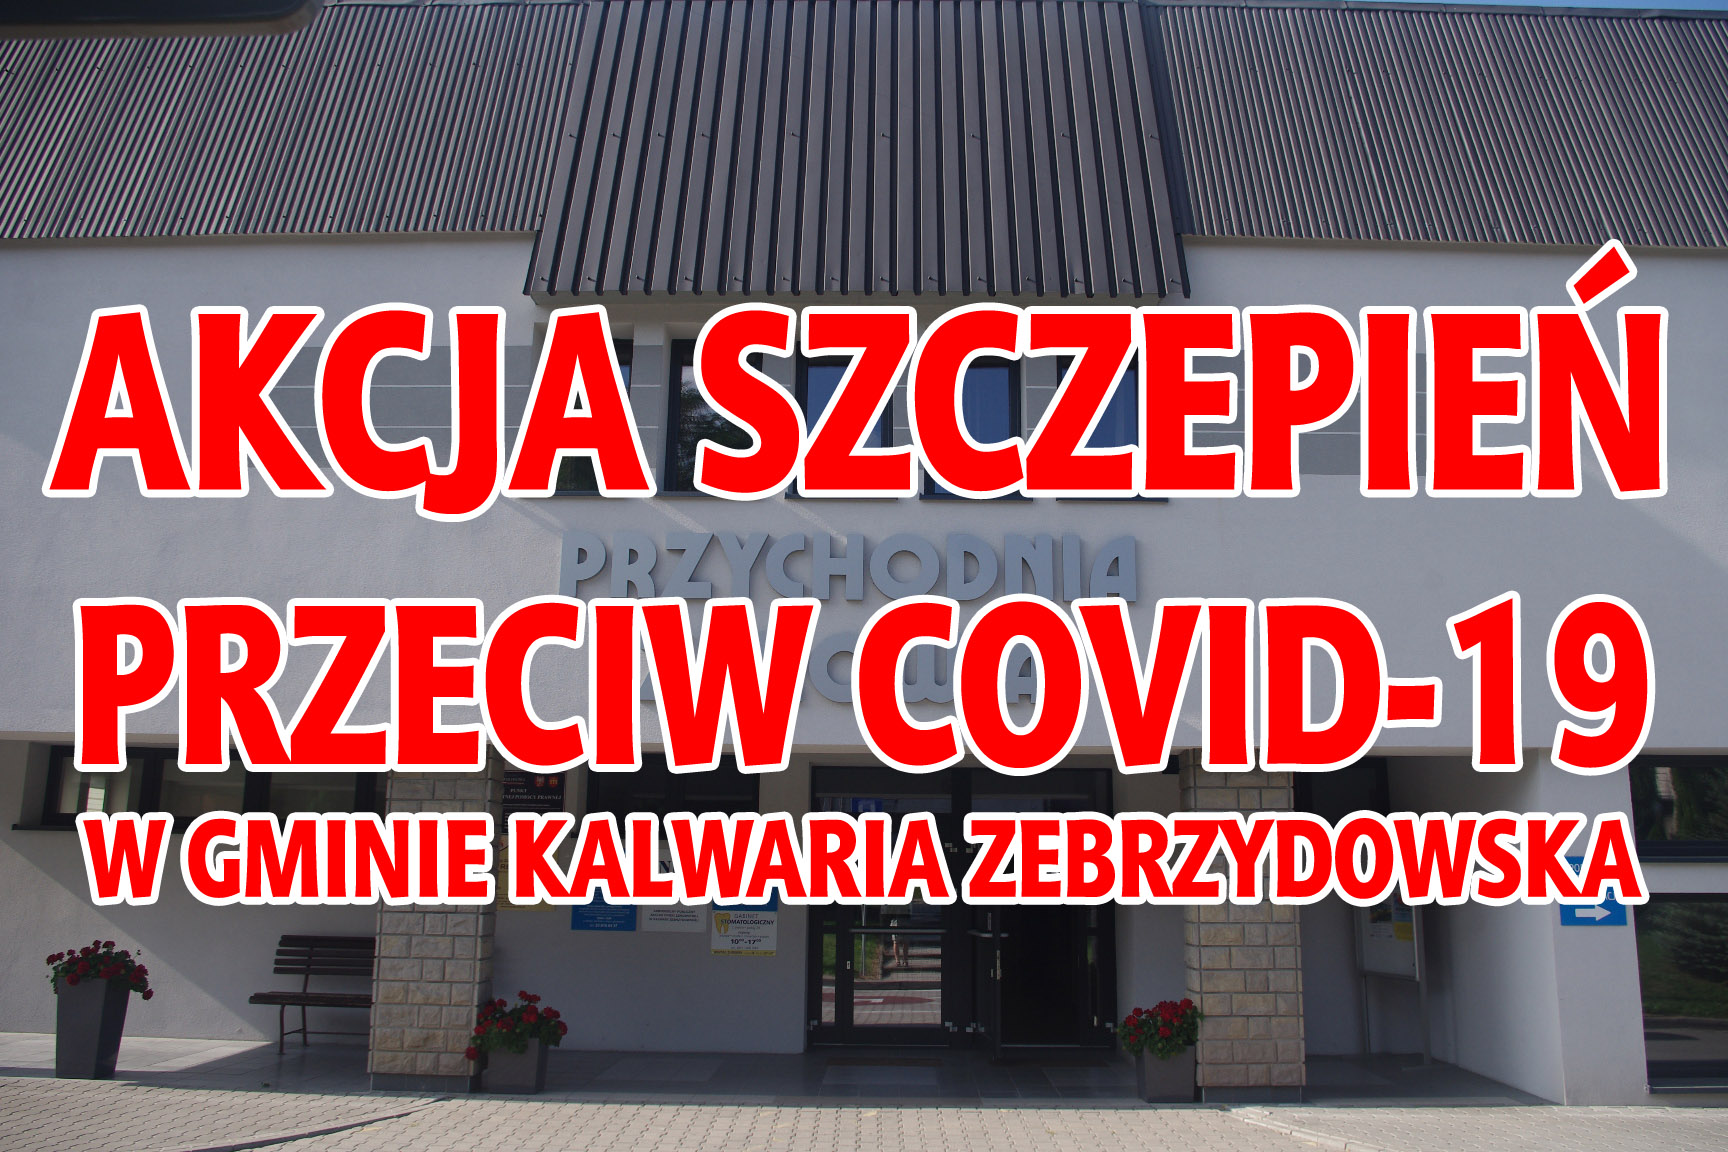 Akcja szczepień przeciw Covid-19 w gminie Kalwaria Zebrzydowska